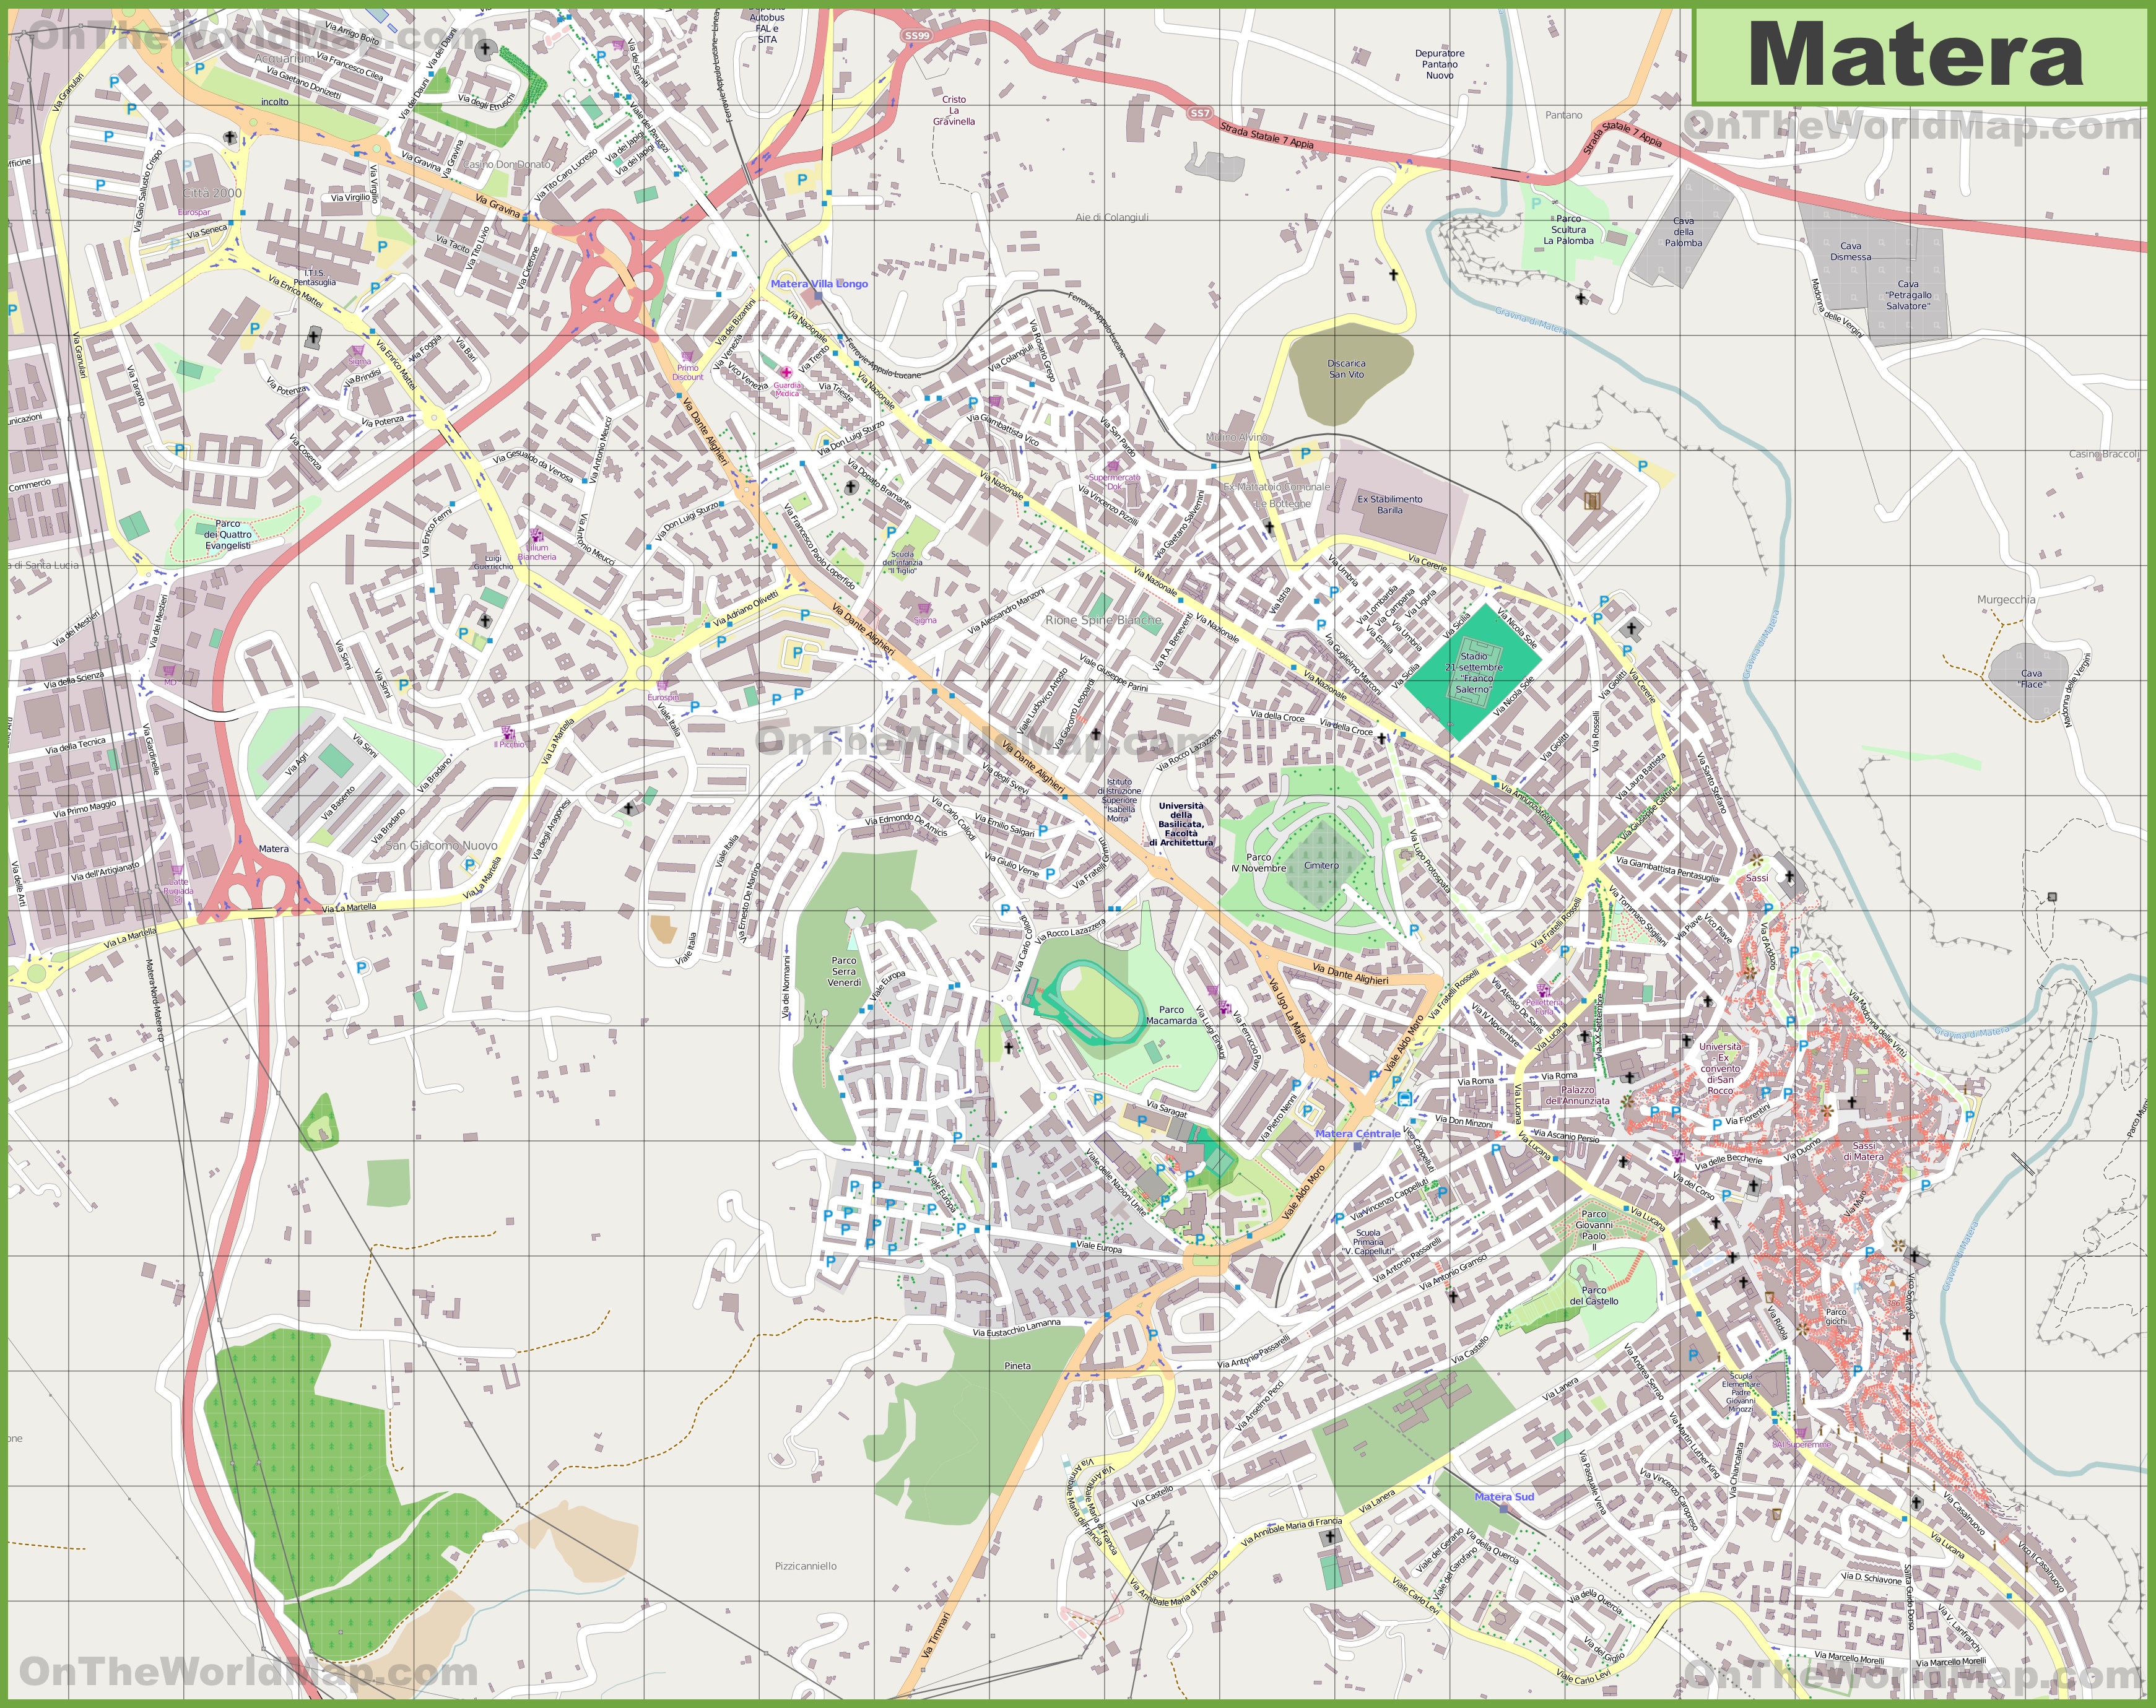 La Maddalena Old Town Map